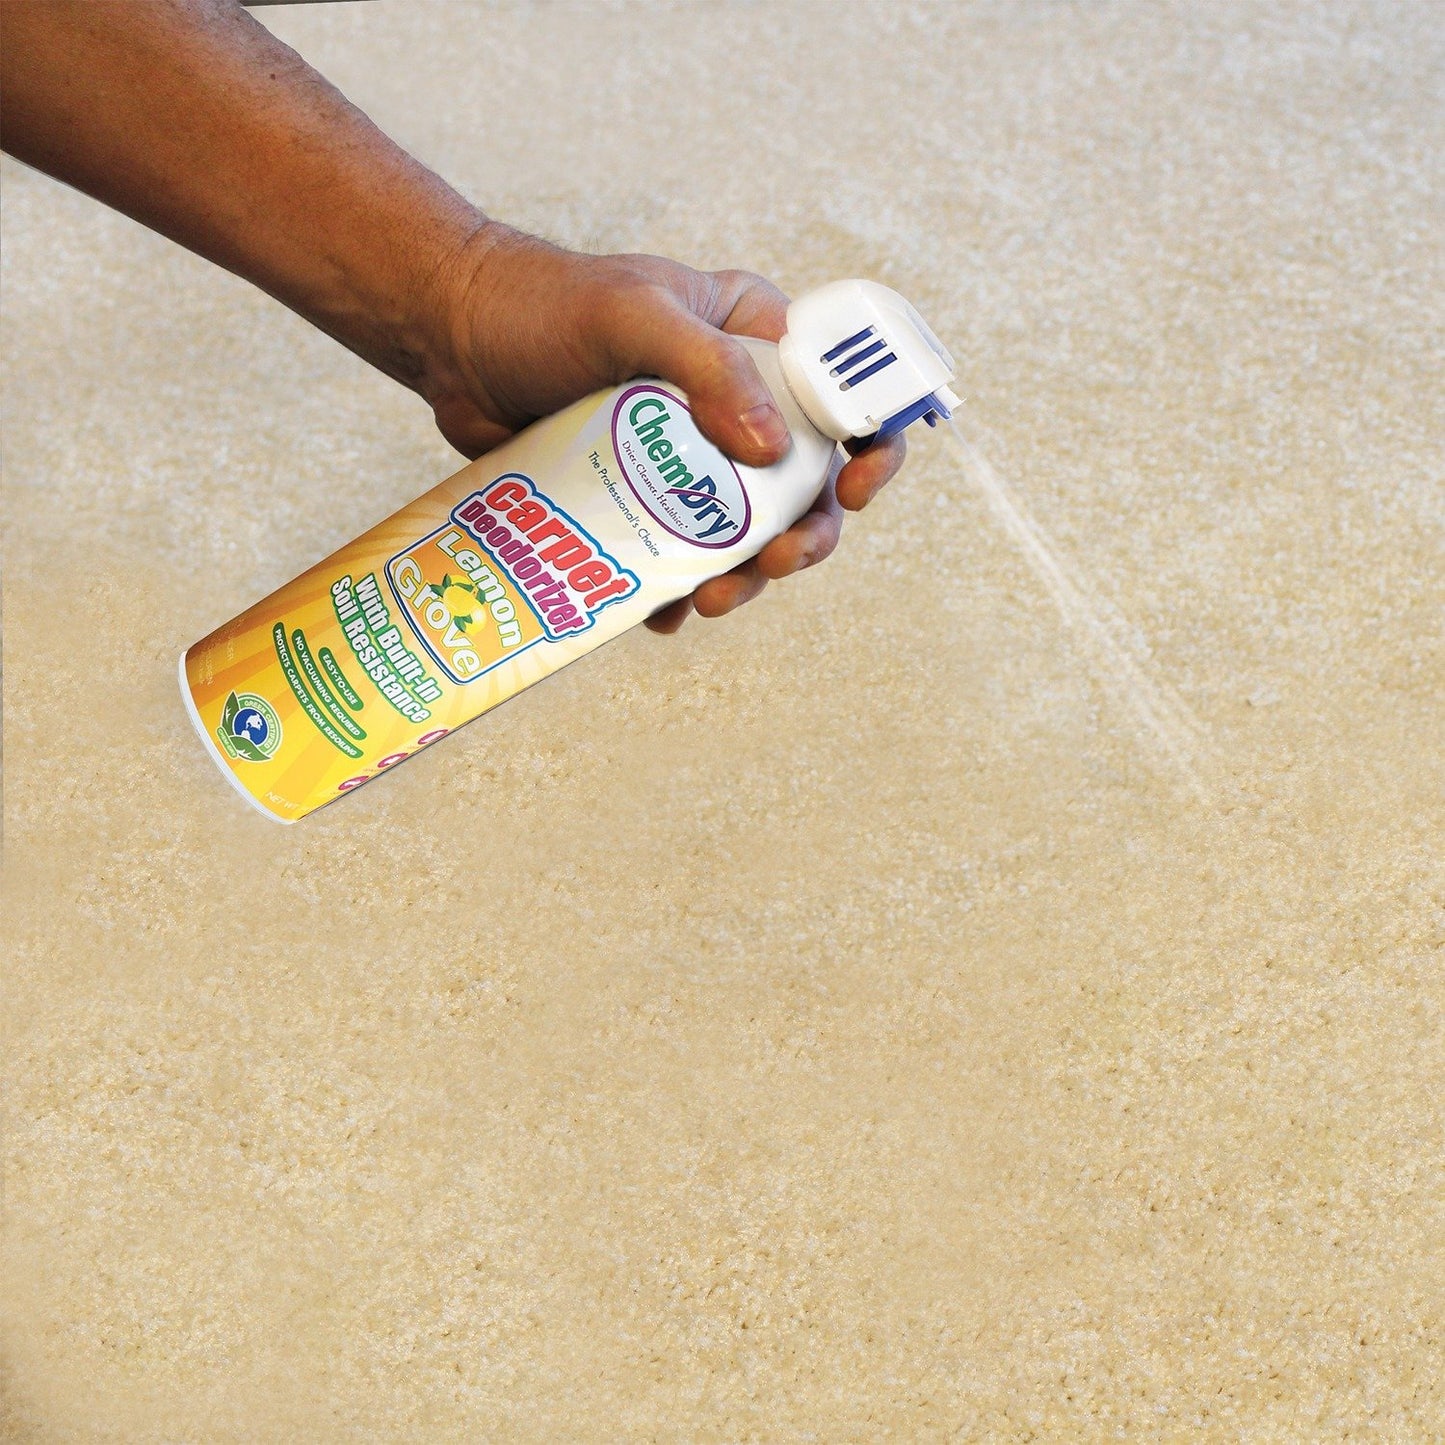 Chem-dry C319 Carpet Deodorizer (Lemon Grove)